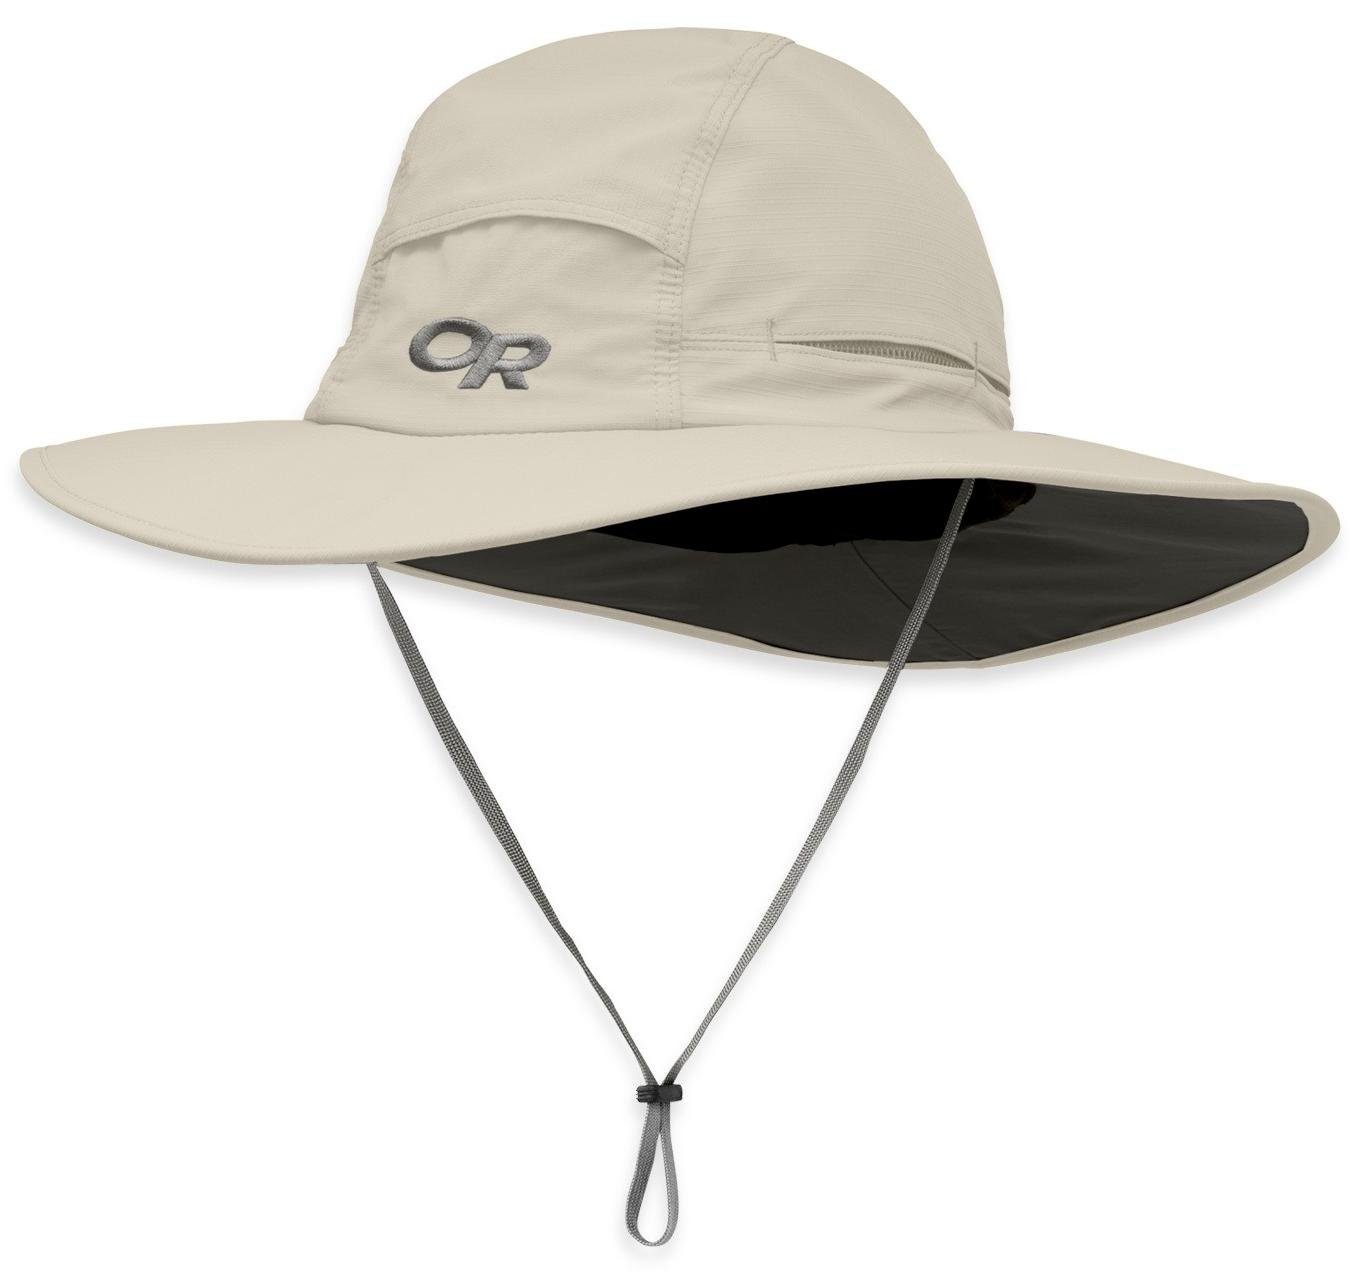 Outdoor Research Outdoorhut Outdoor Research Sombriolet Sun Hat 0910